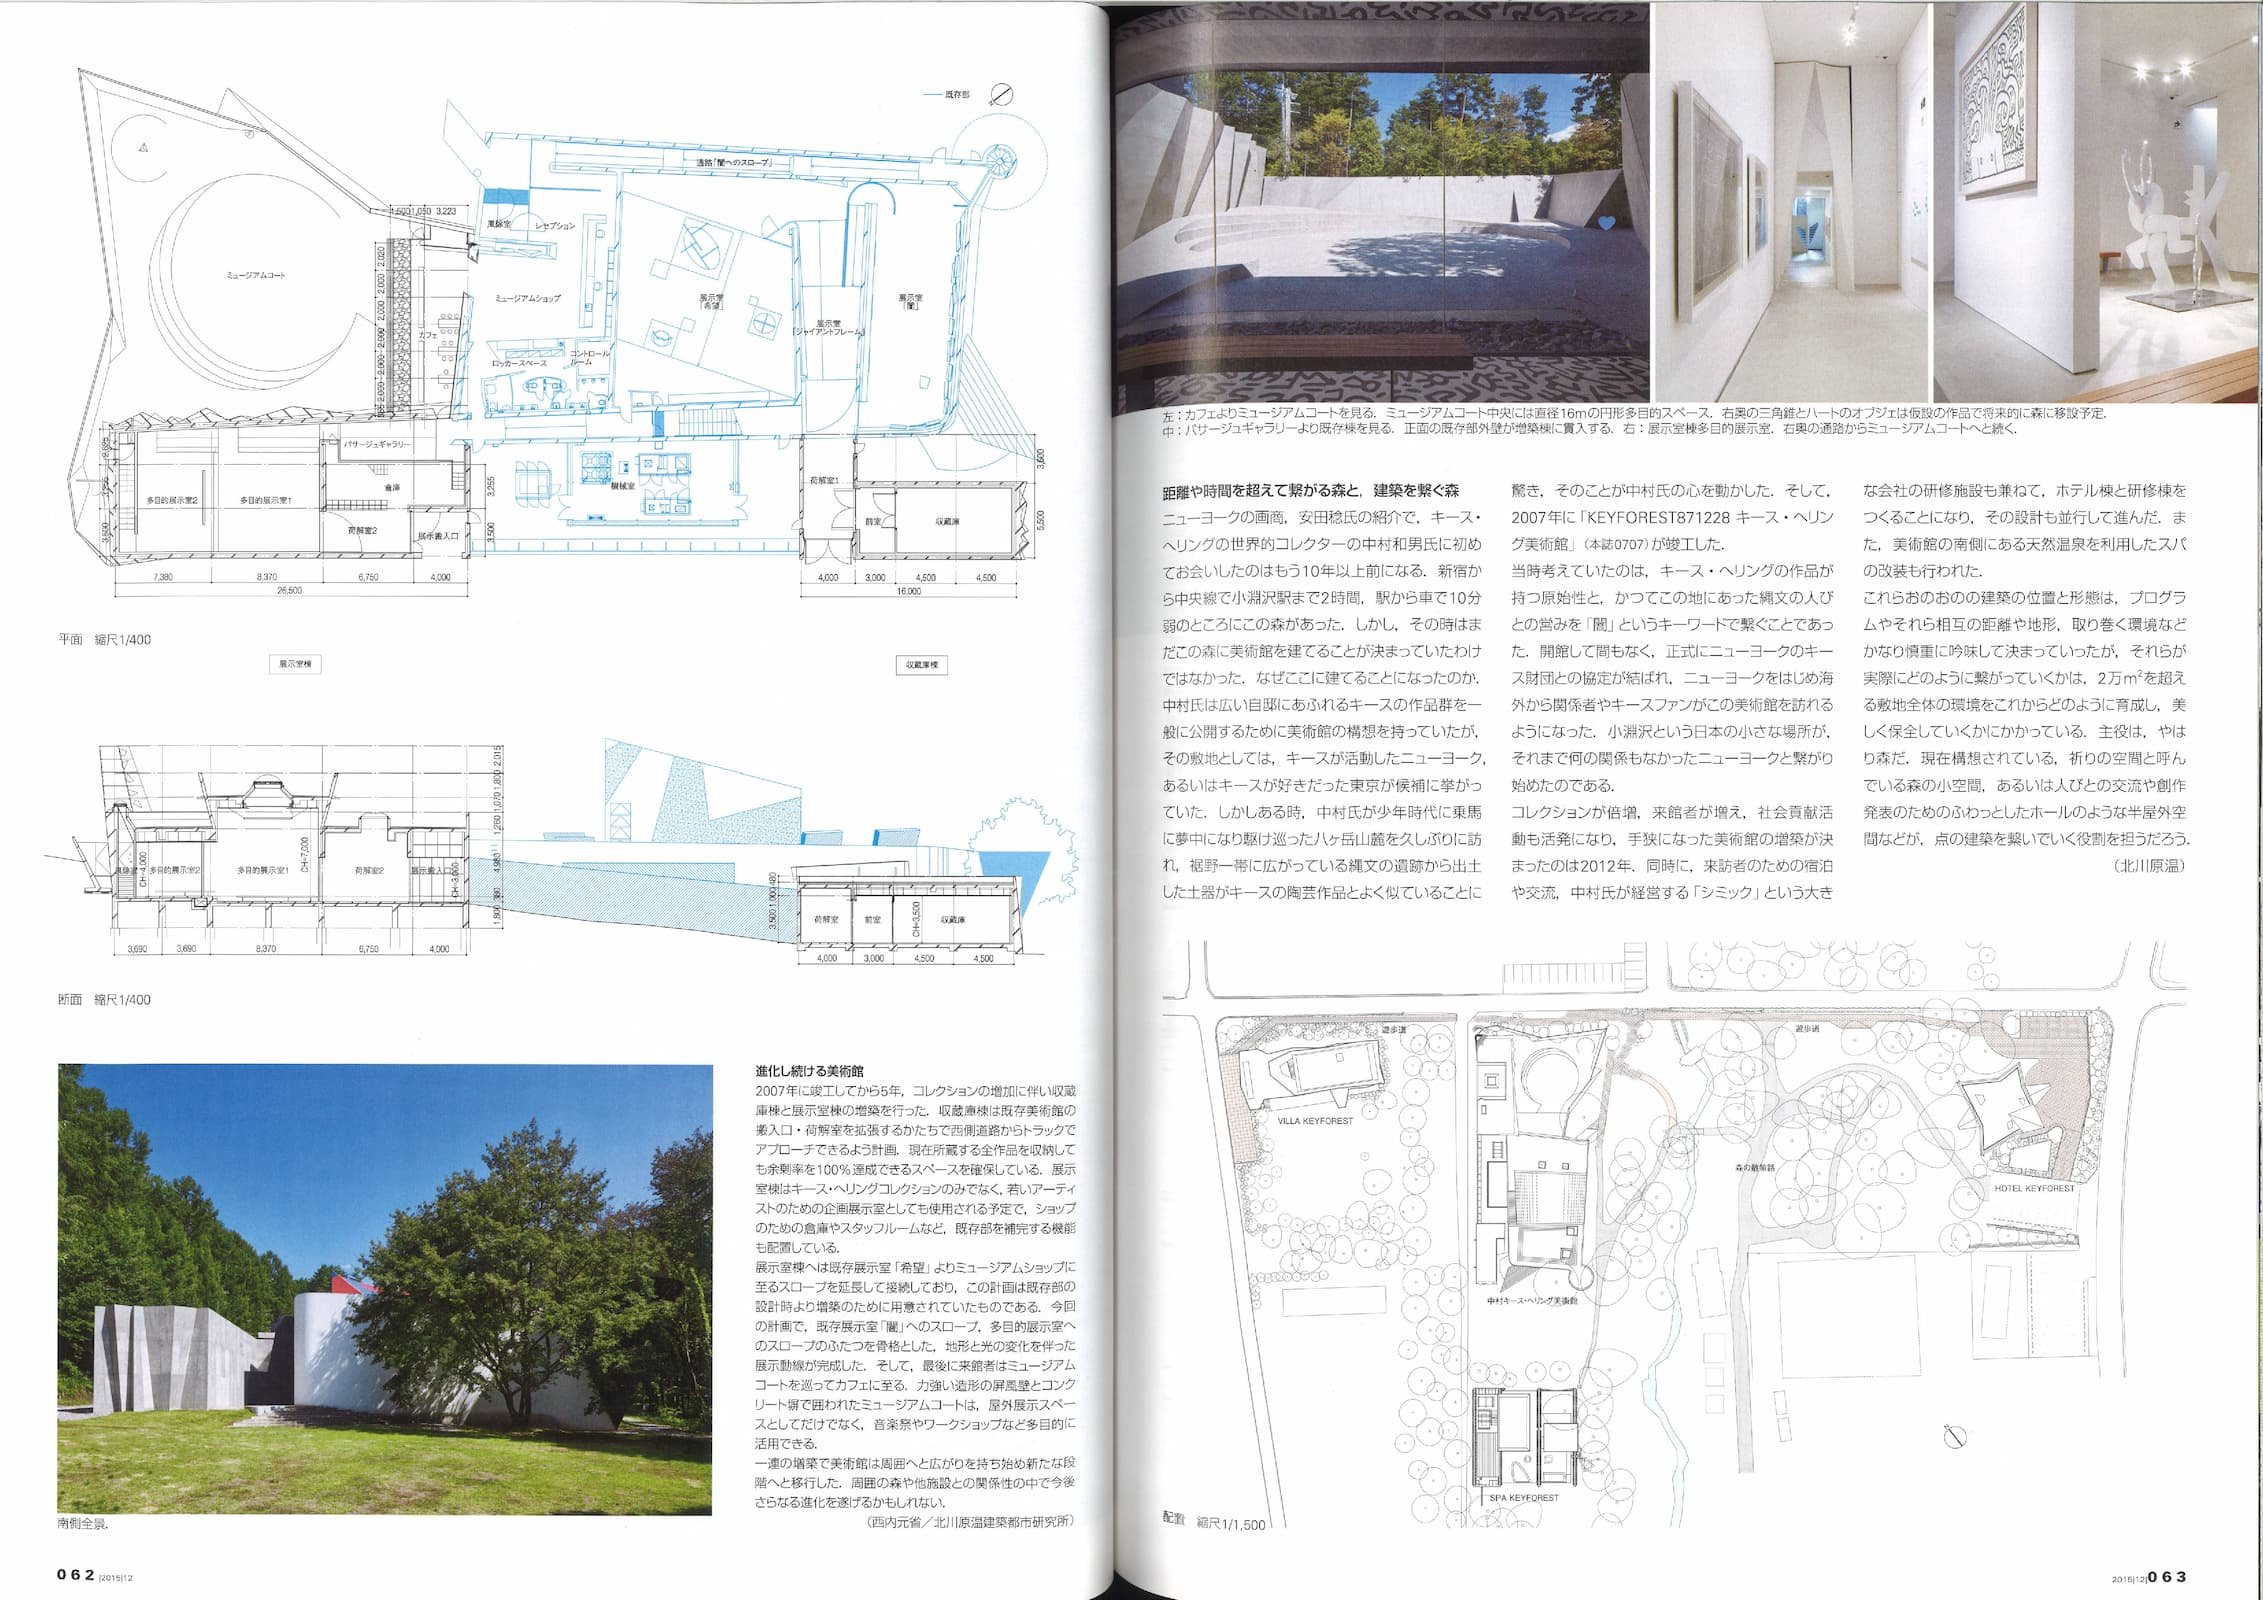 新建築 - New Architecture 90 - Nakamura Keith Haring Collection_Page_7.jpg